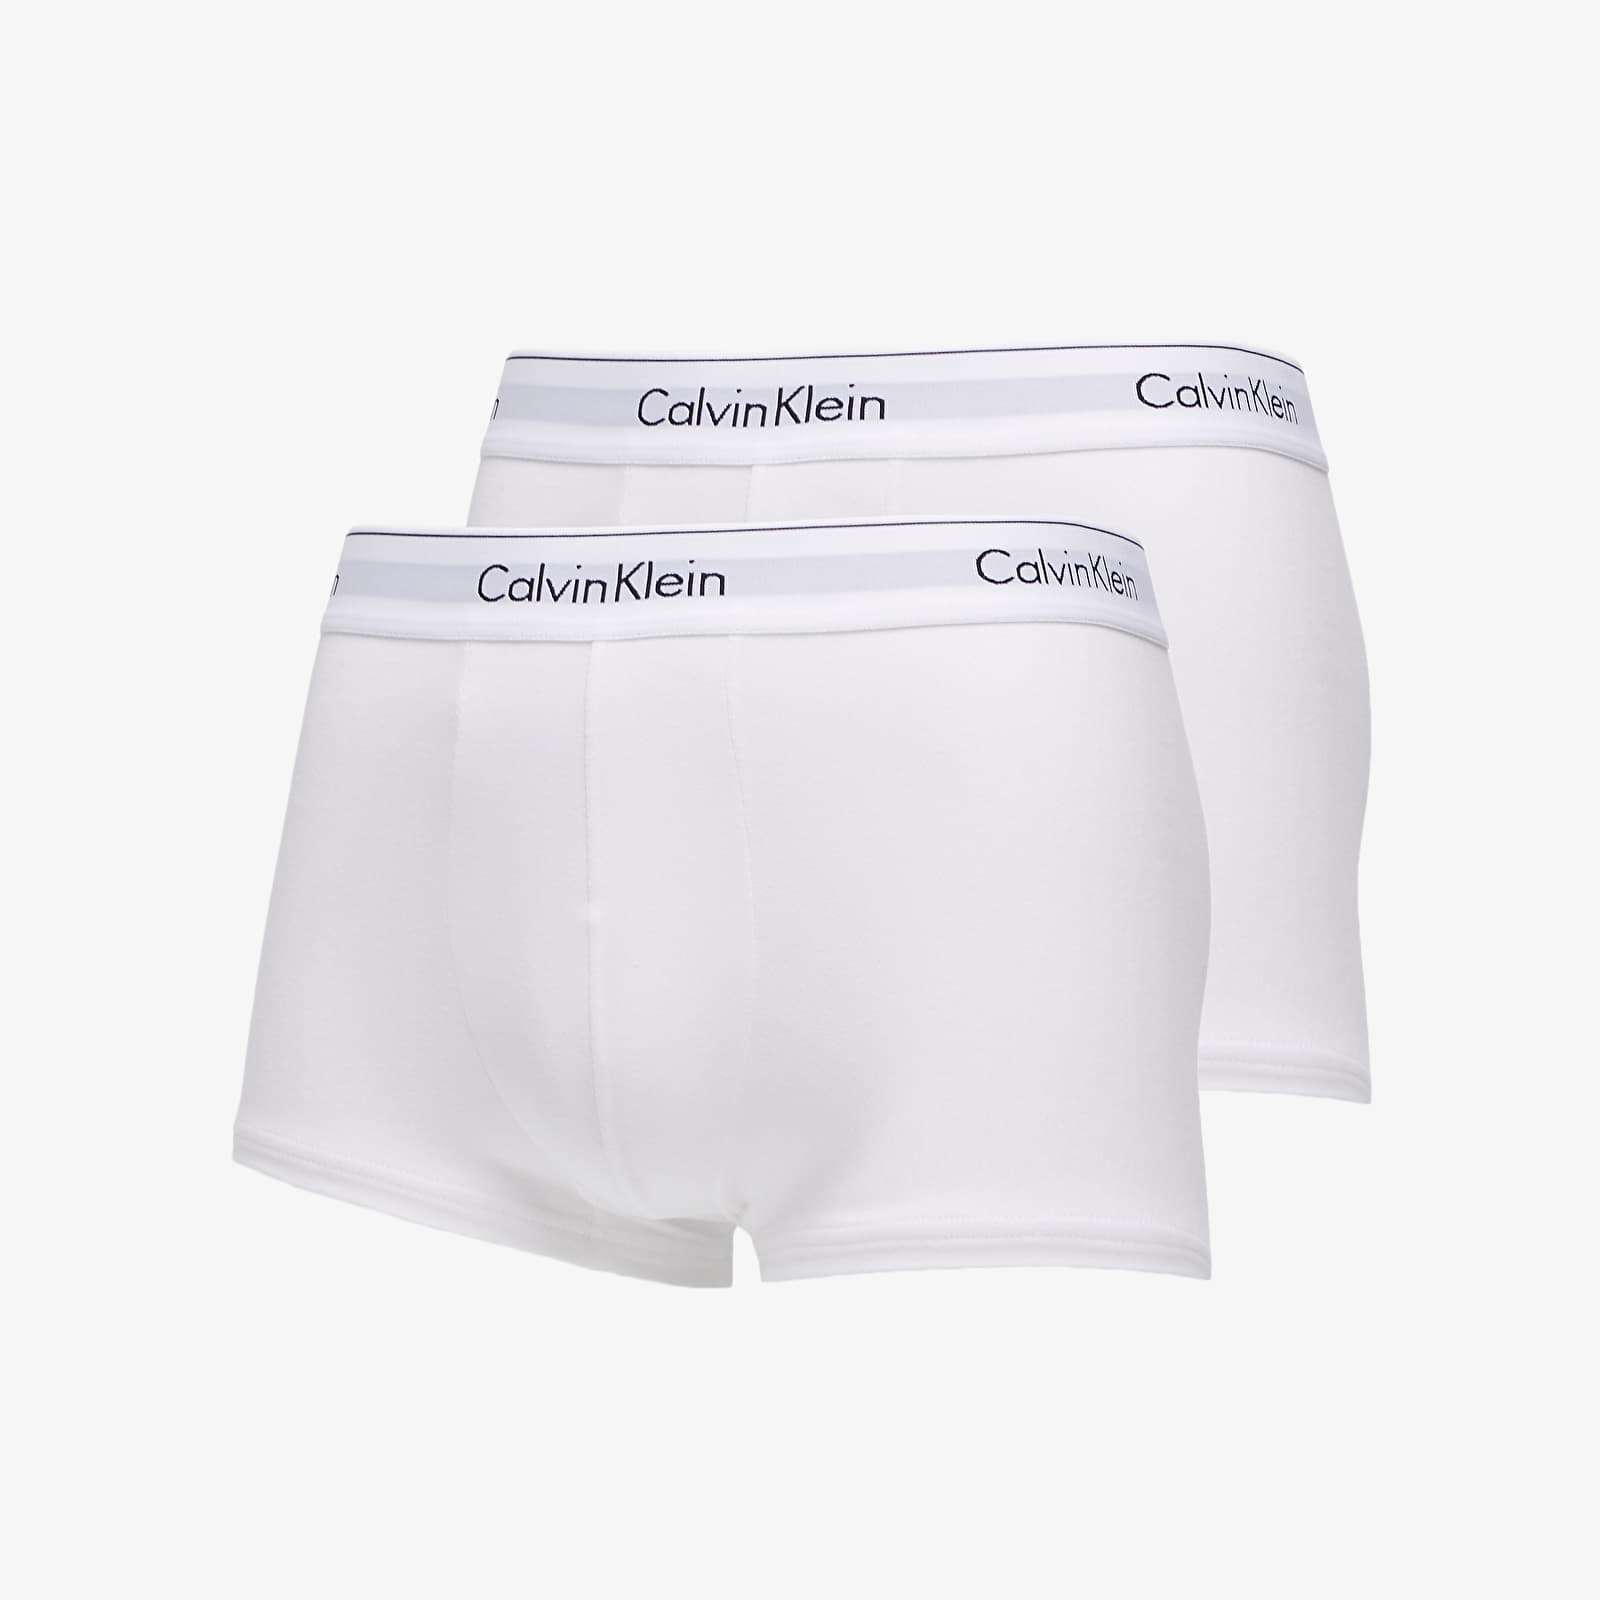 Boxerky Calvin Klein Trunks 2 Pack White